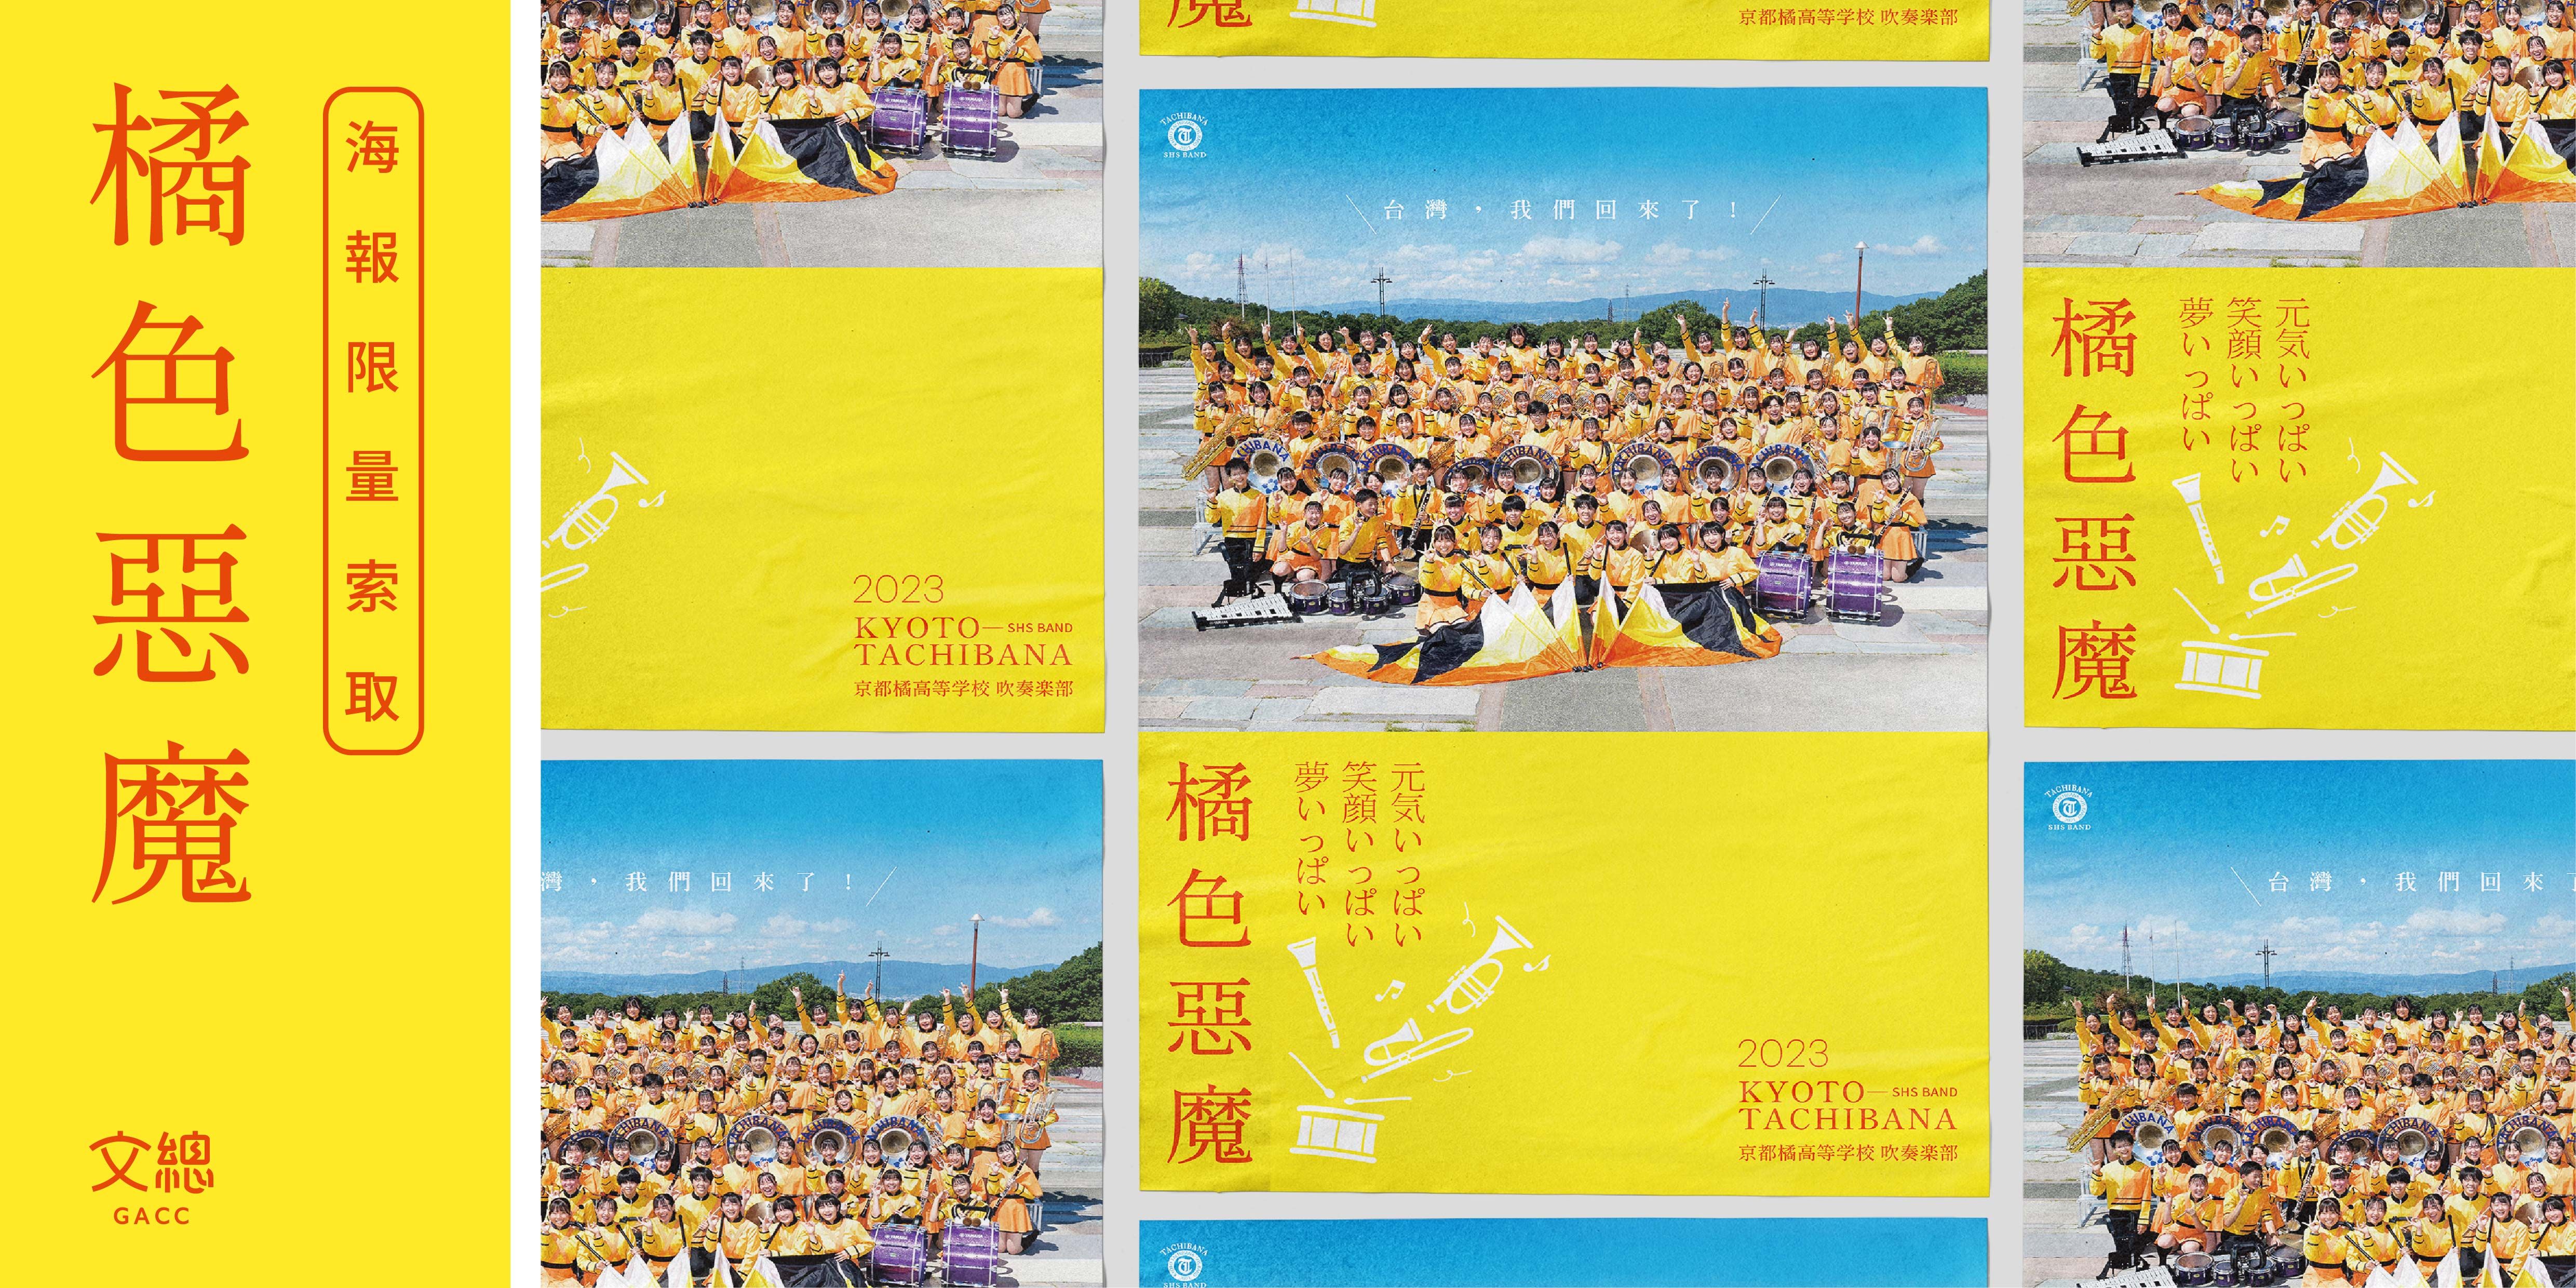 ▲▼「橘色惡魔」海報免費送！文總將於12月8日發放「日本京都橘高校吹奏樂部 2023來台紀念海報」。